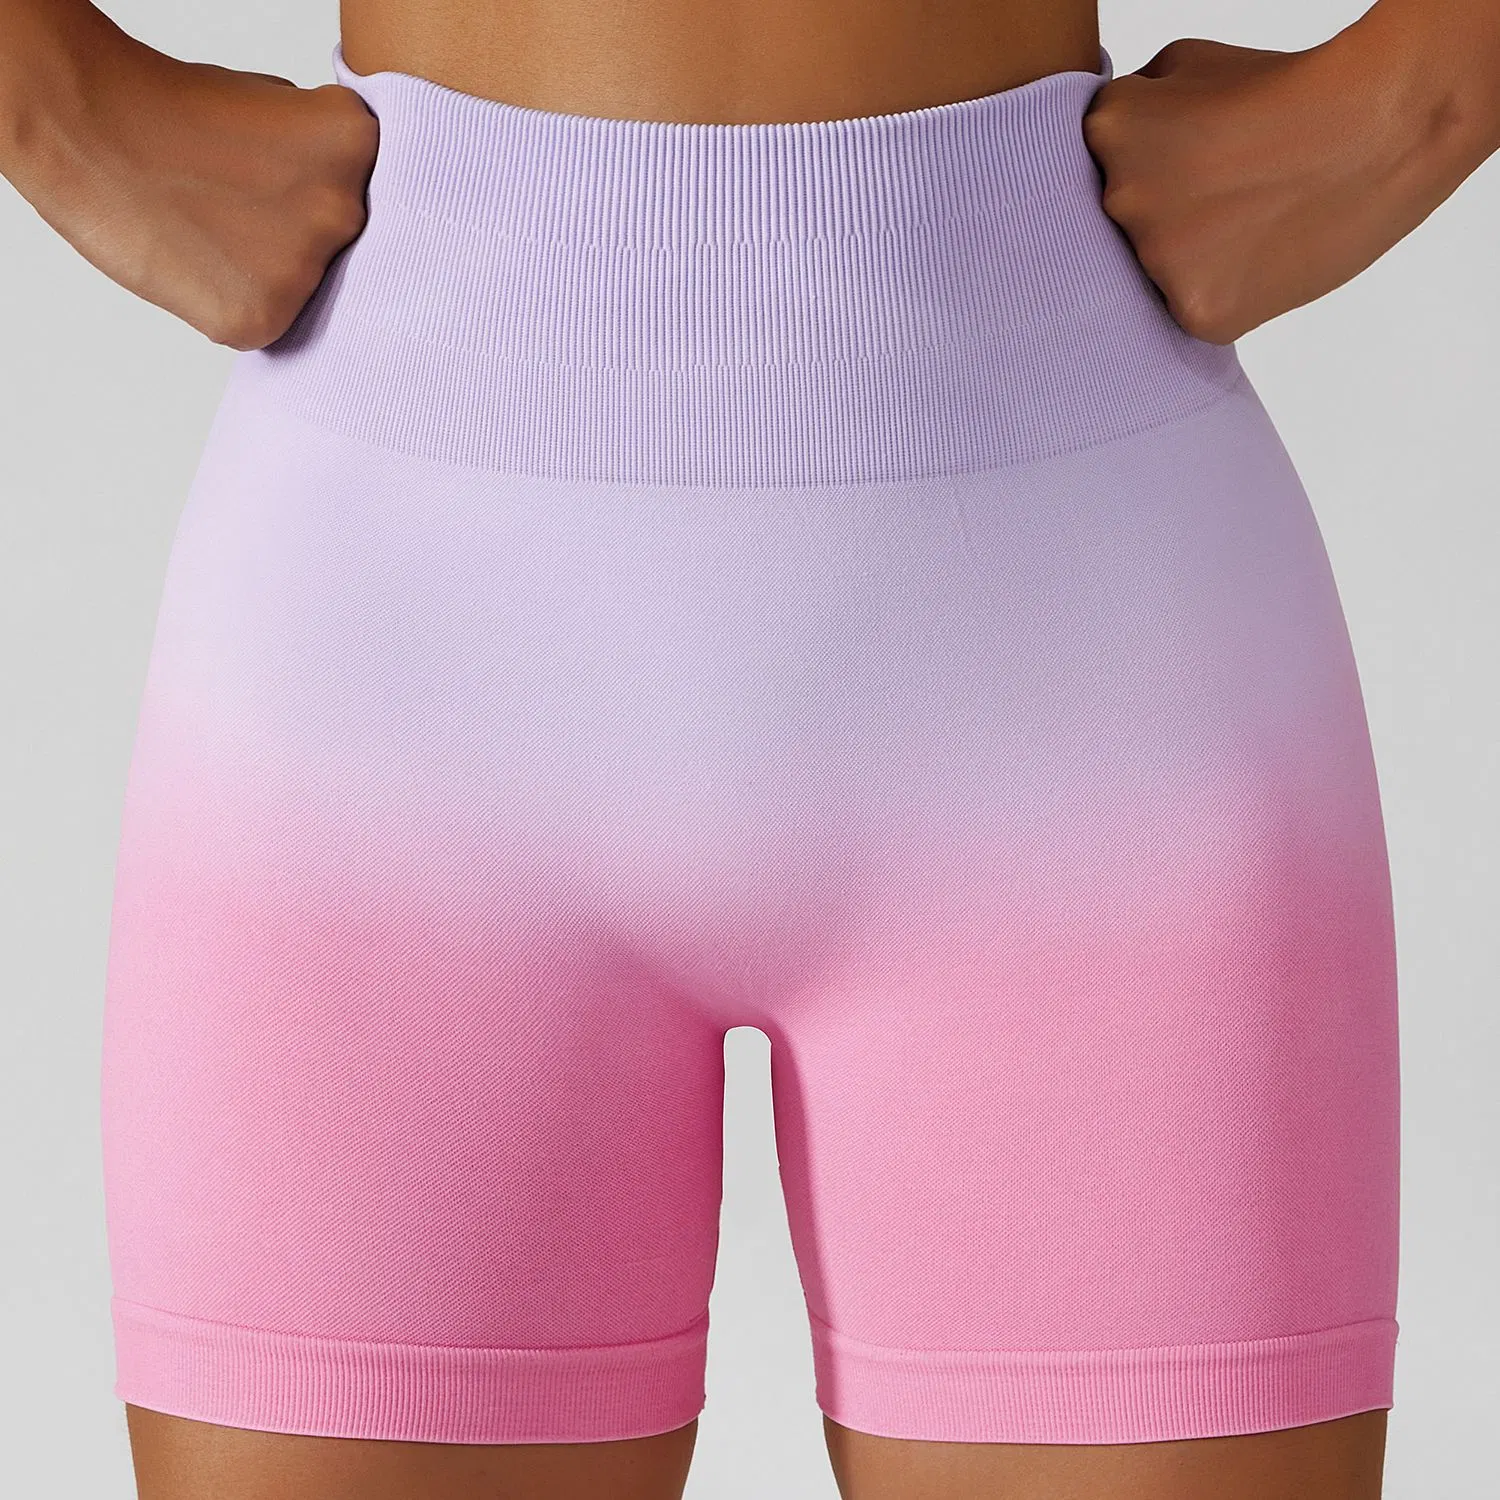 Vêtements de sport surdimensionnés pour femmes, séchage rapide, pour salle de sport, cyclisme, fitness, shorts de yoga.